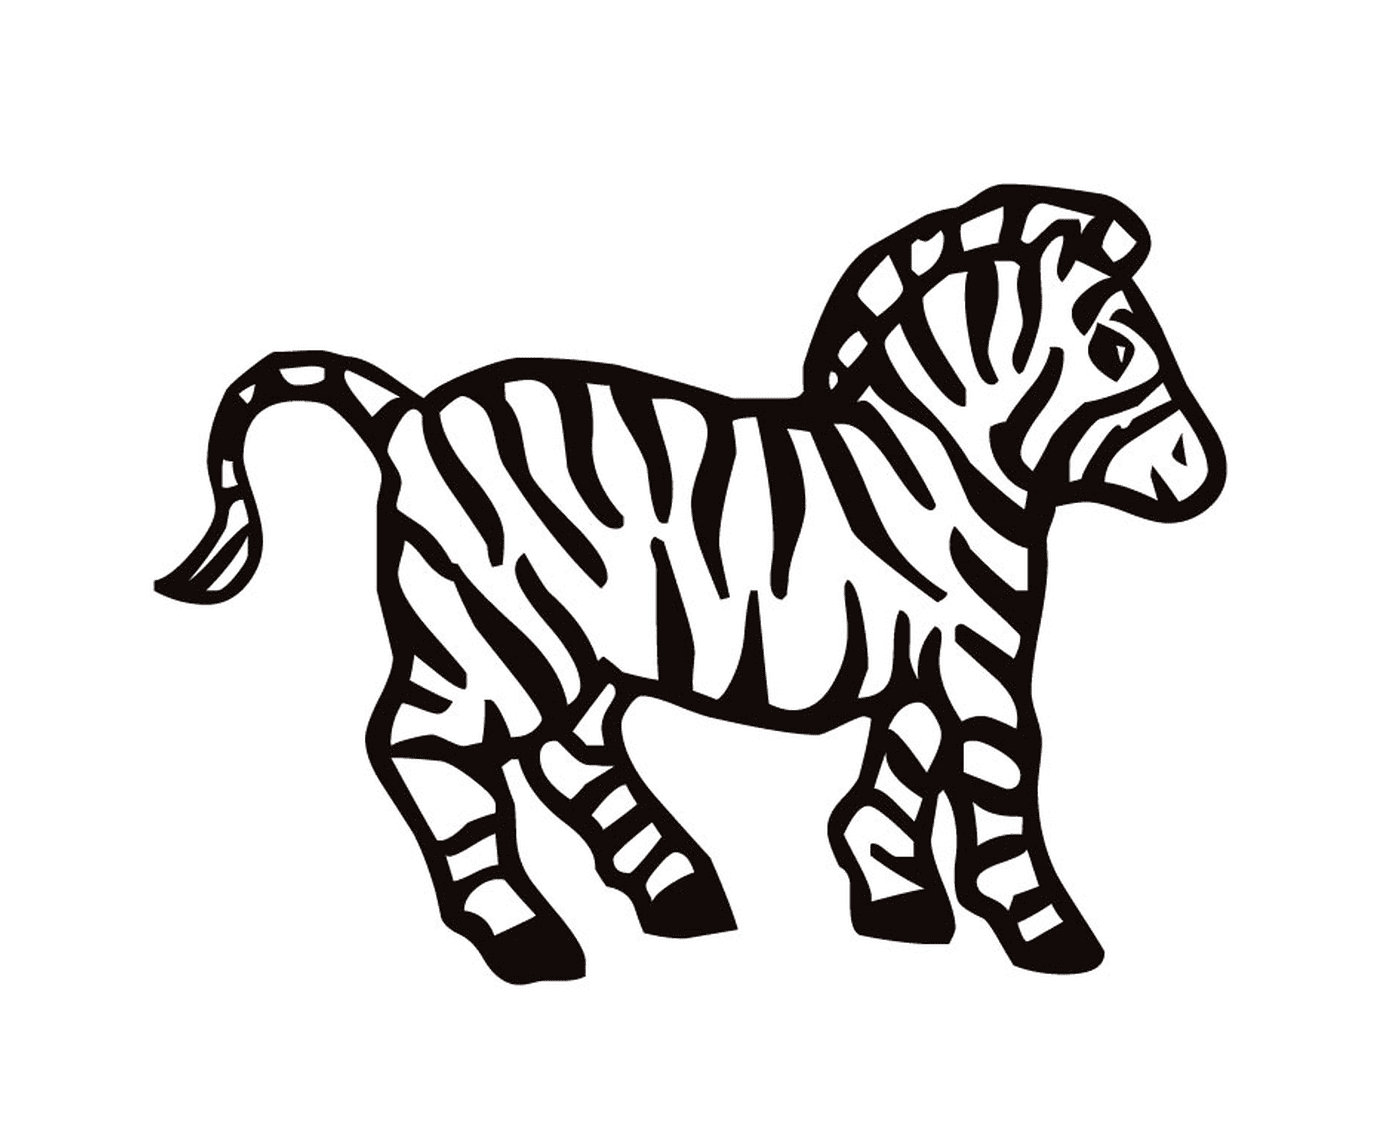  Beautiful striped zebra 